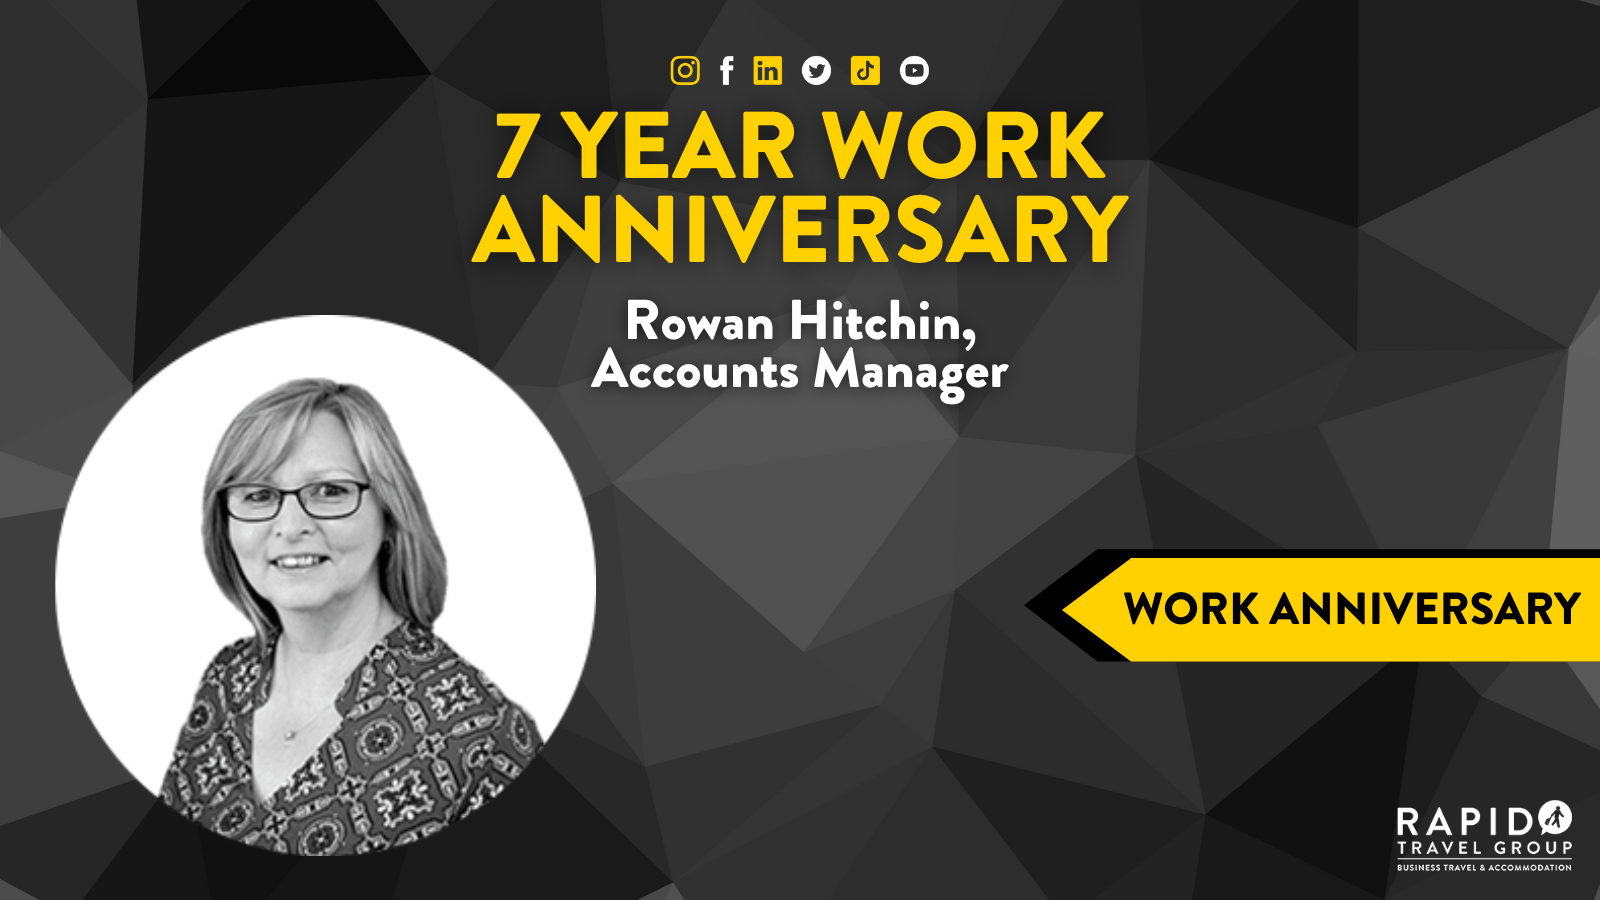 7 Year Work Anniversary: Rowan Hitchin, Accounts Manager